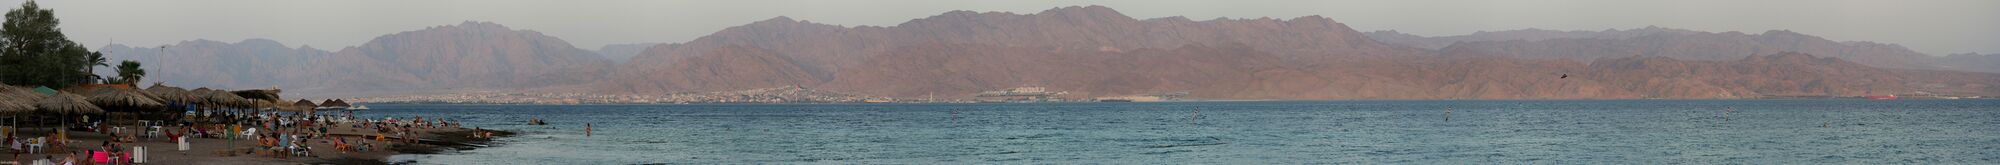 Панорамный вид Красного моря со стороны Эйлата (с Эйлатским (Акабским) заливом на заднем плане)